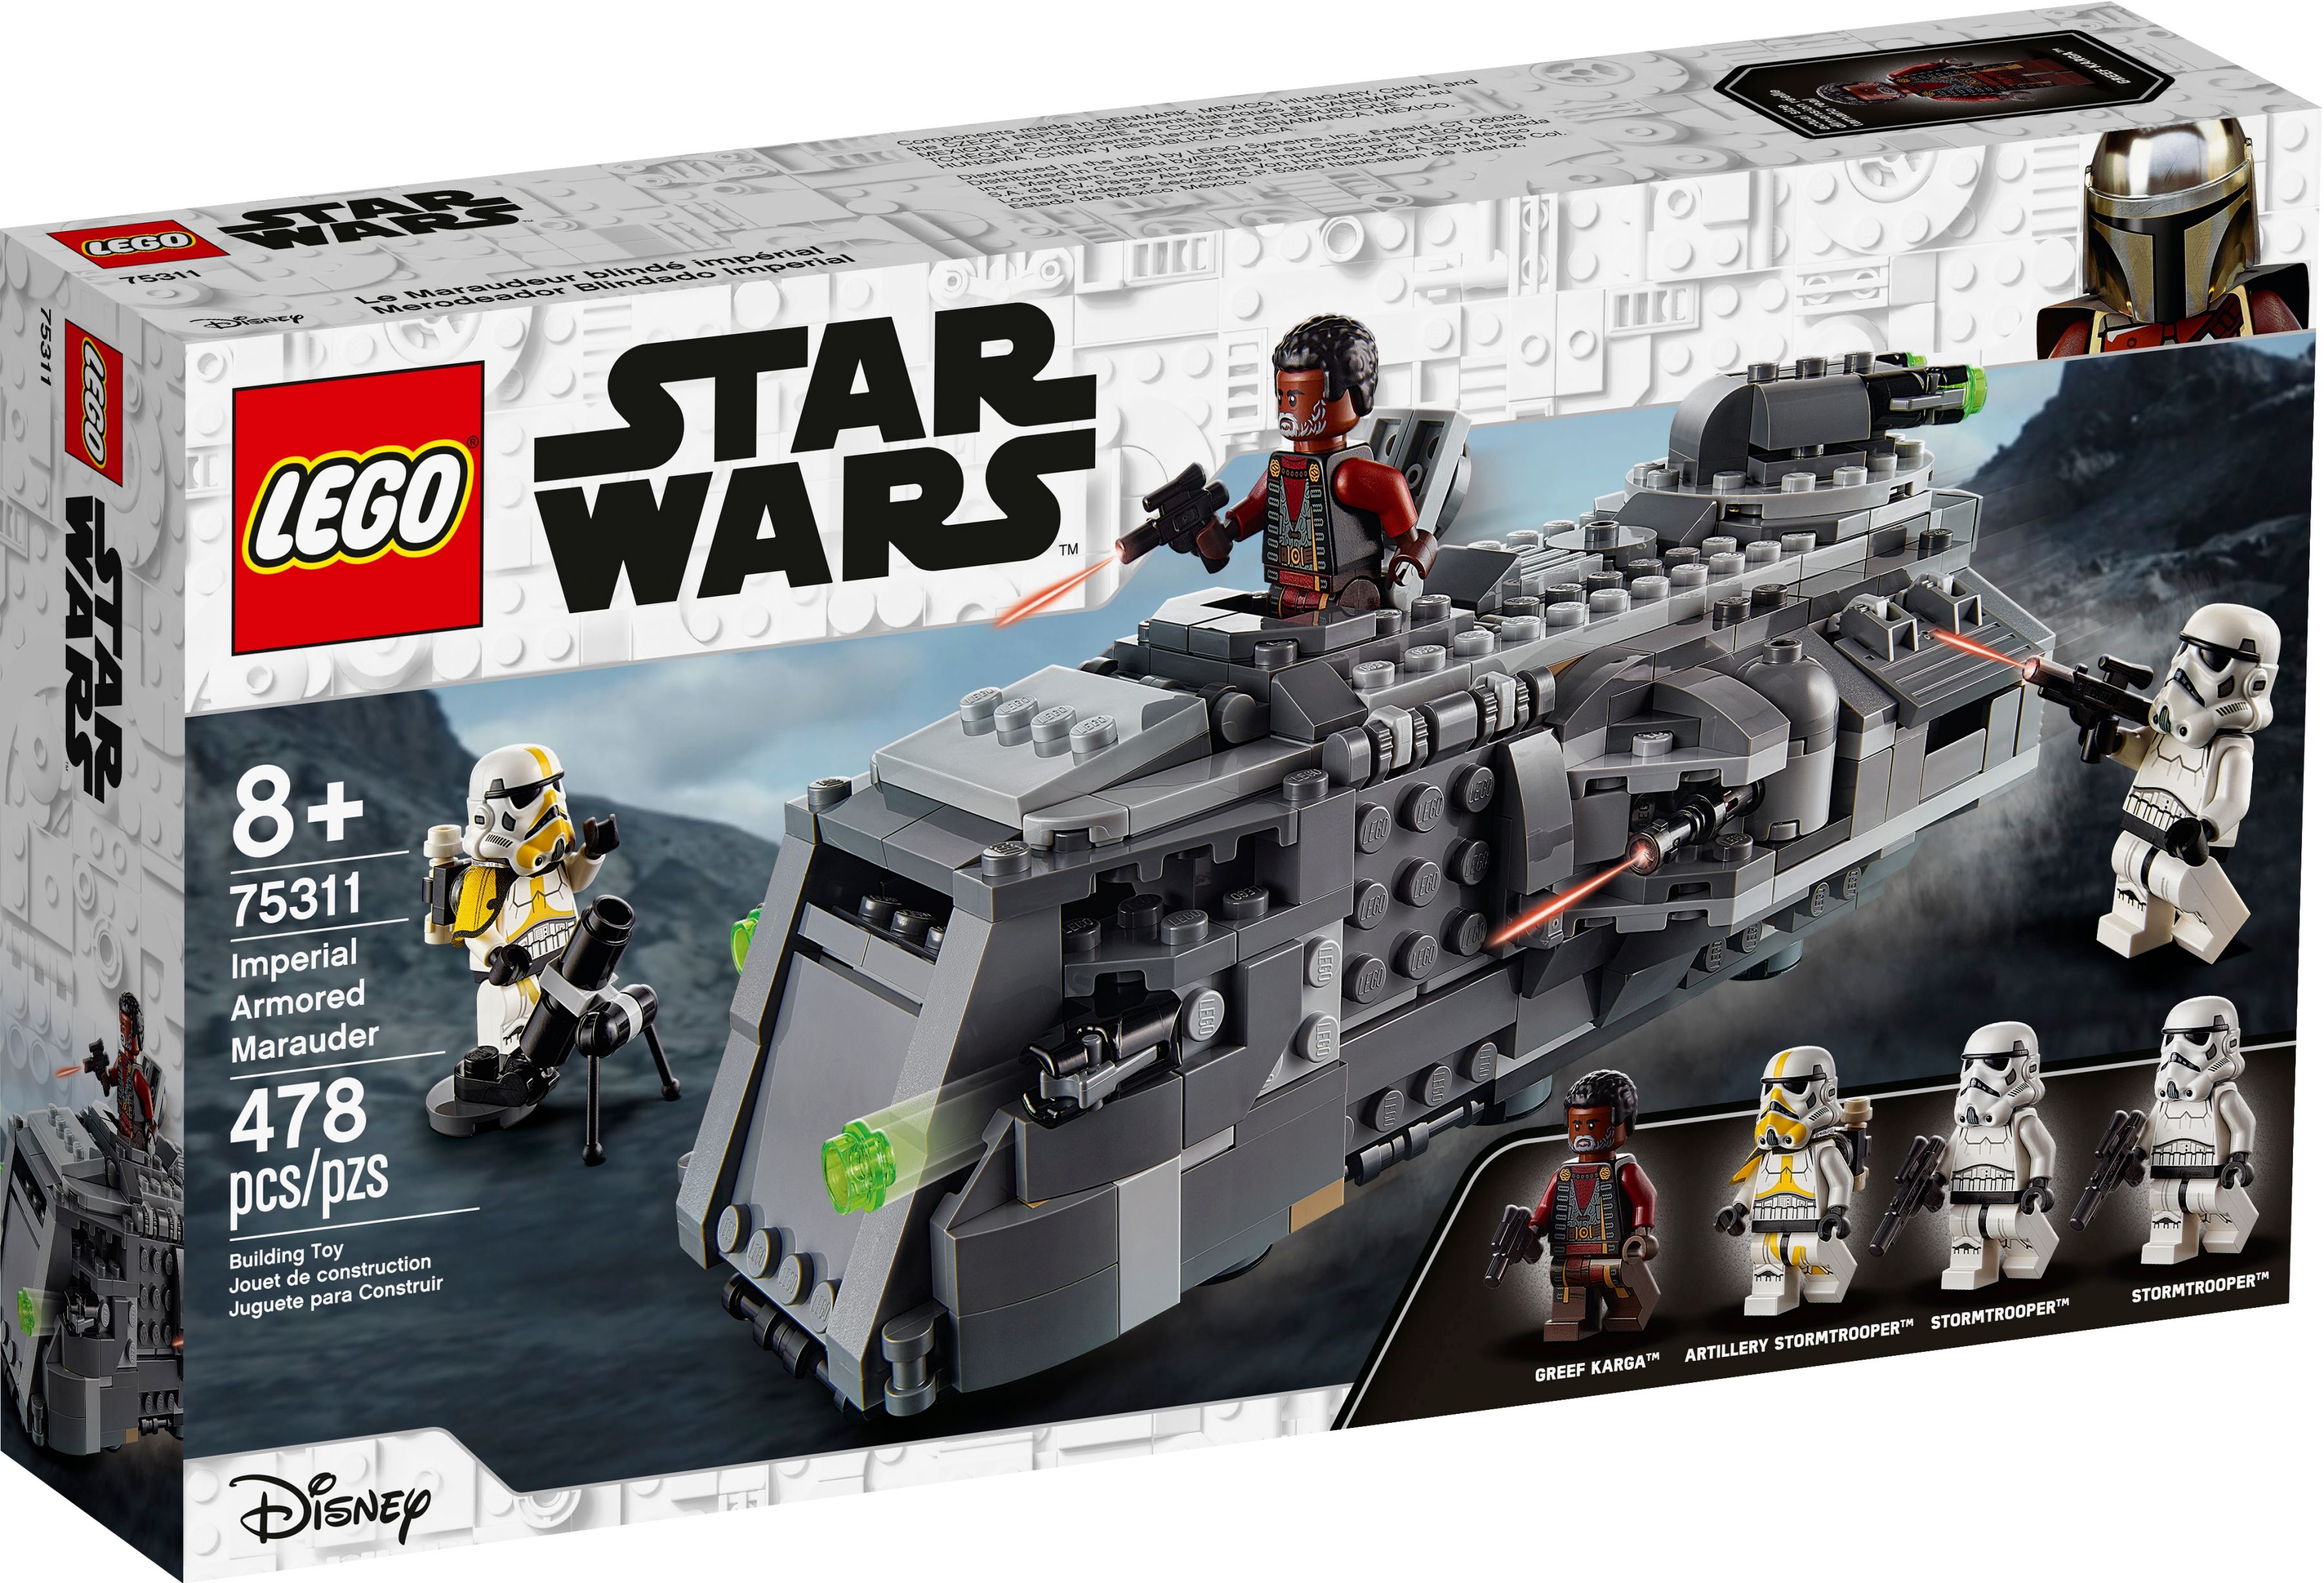 LEGO Star Wars 75311 Imperialer Marauder LEGO_75311_alt1.jpg